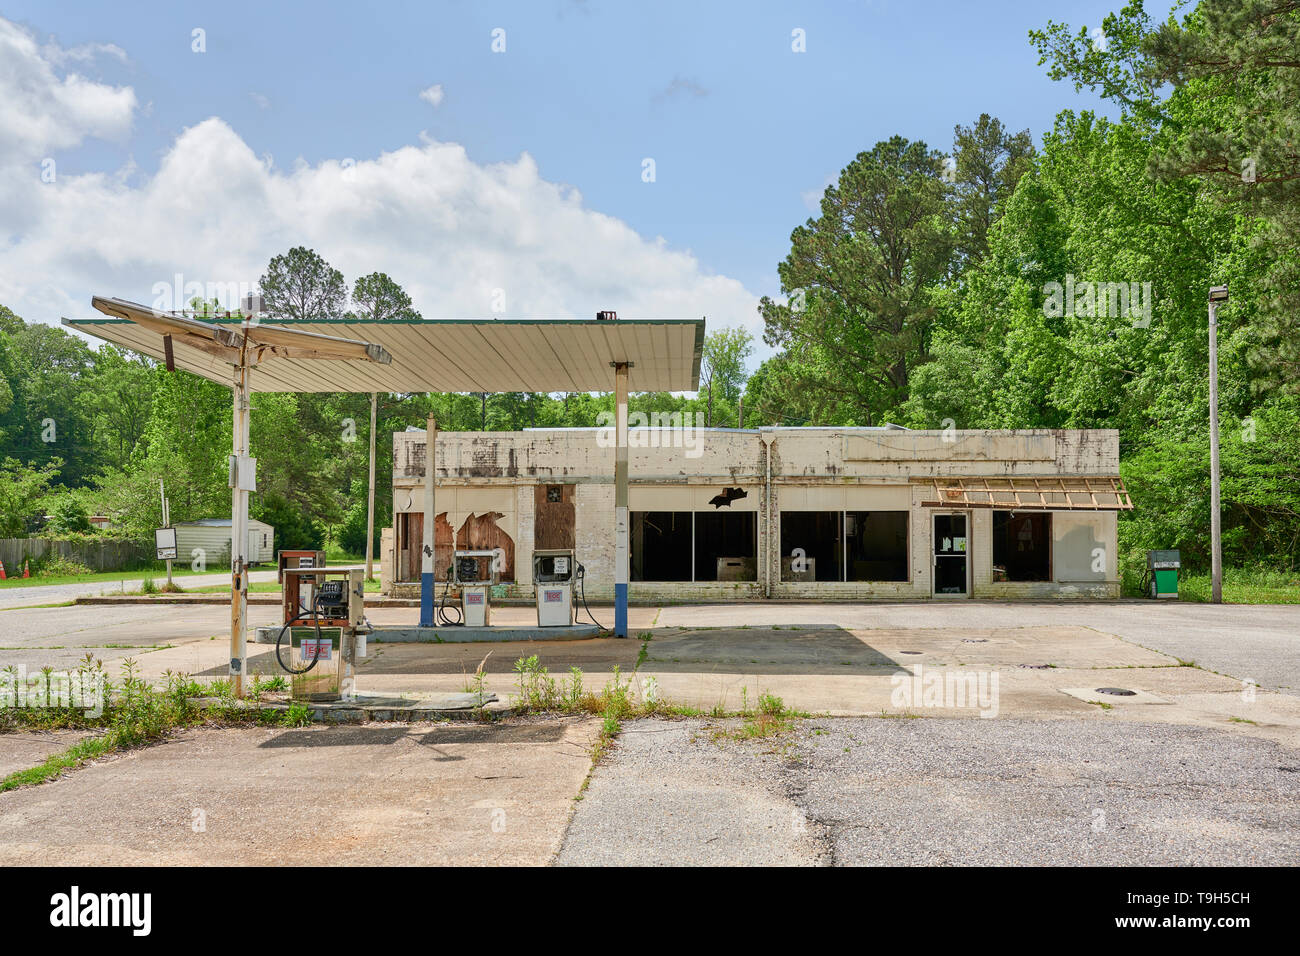 Eine alte geschlossen und verlassene Tankstelle, oder Service Station, entlang einer Landstraße in ländlichen Alabama, USA. Stockfoto